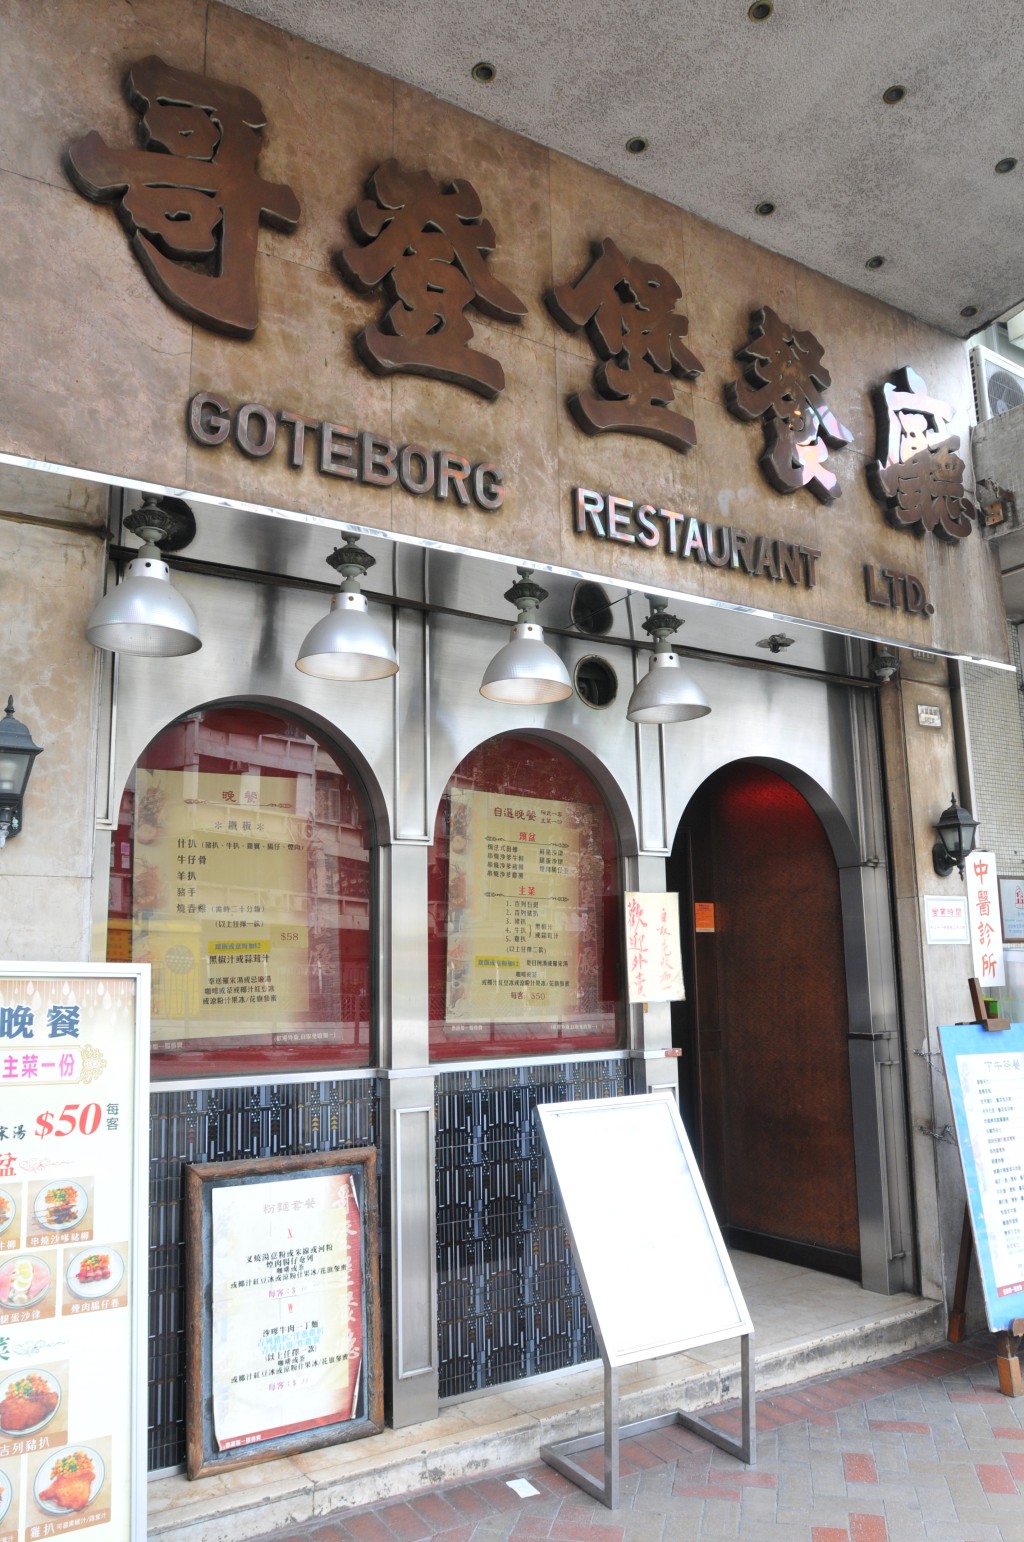 哥登堡餐廳屹立土瓜灣馬頭圍道40多年。